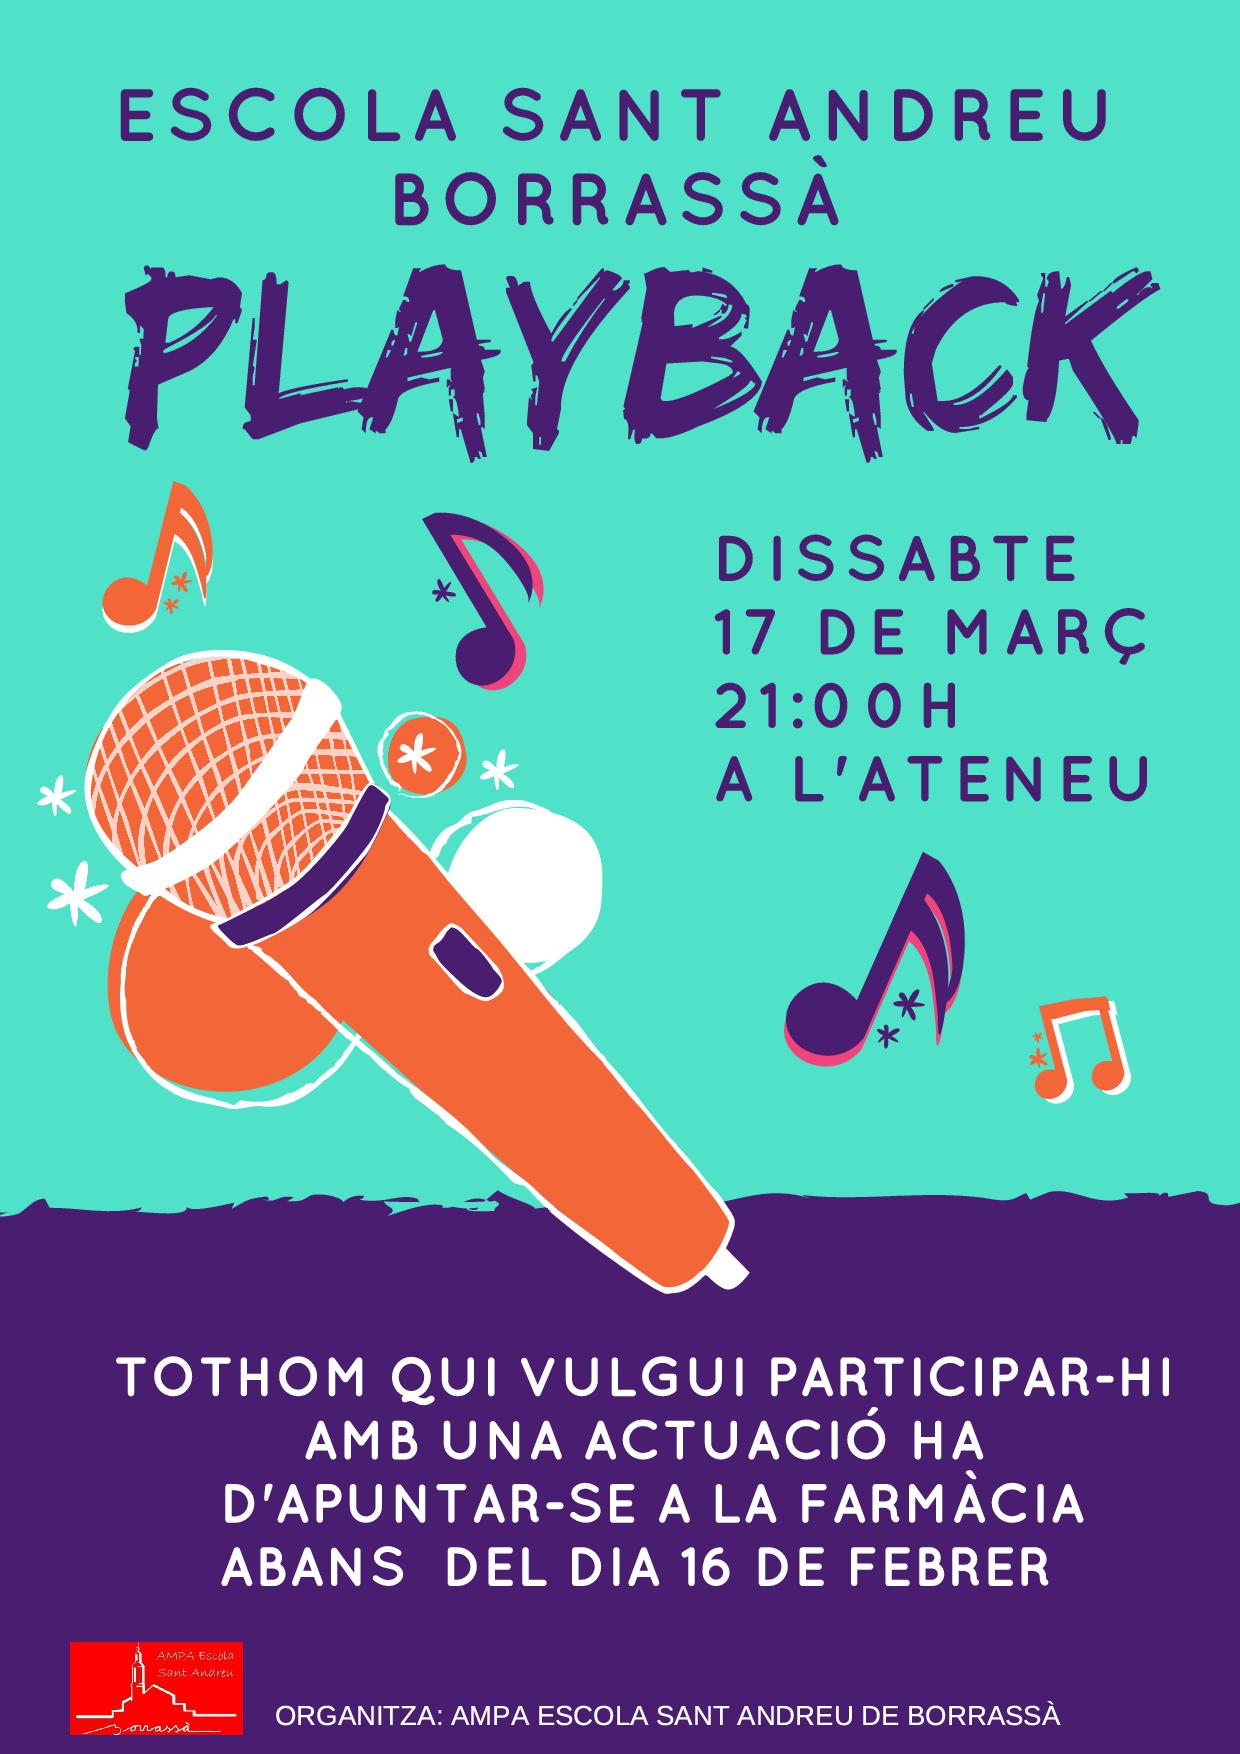 L'AMPA de l'escola Sant Andreu organitza un Playback pel dissabte, 17 de març, a partir de les 9 del vespre. Els interessats a participar-hi amb alguna actuació s'han d'inscriure a la farmàcia abans del dia 16 de febrer.